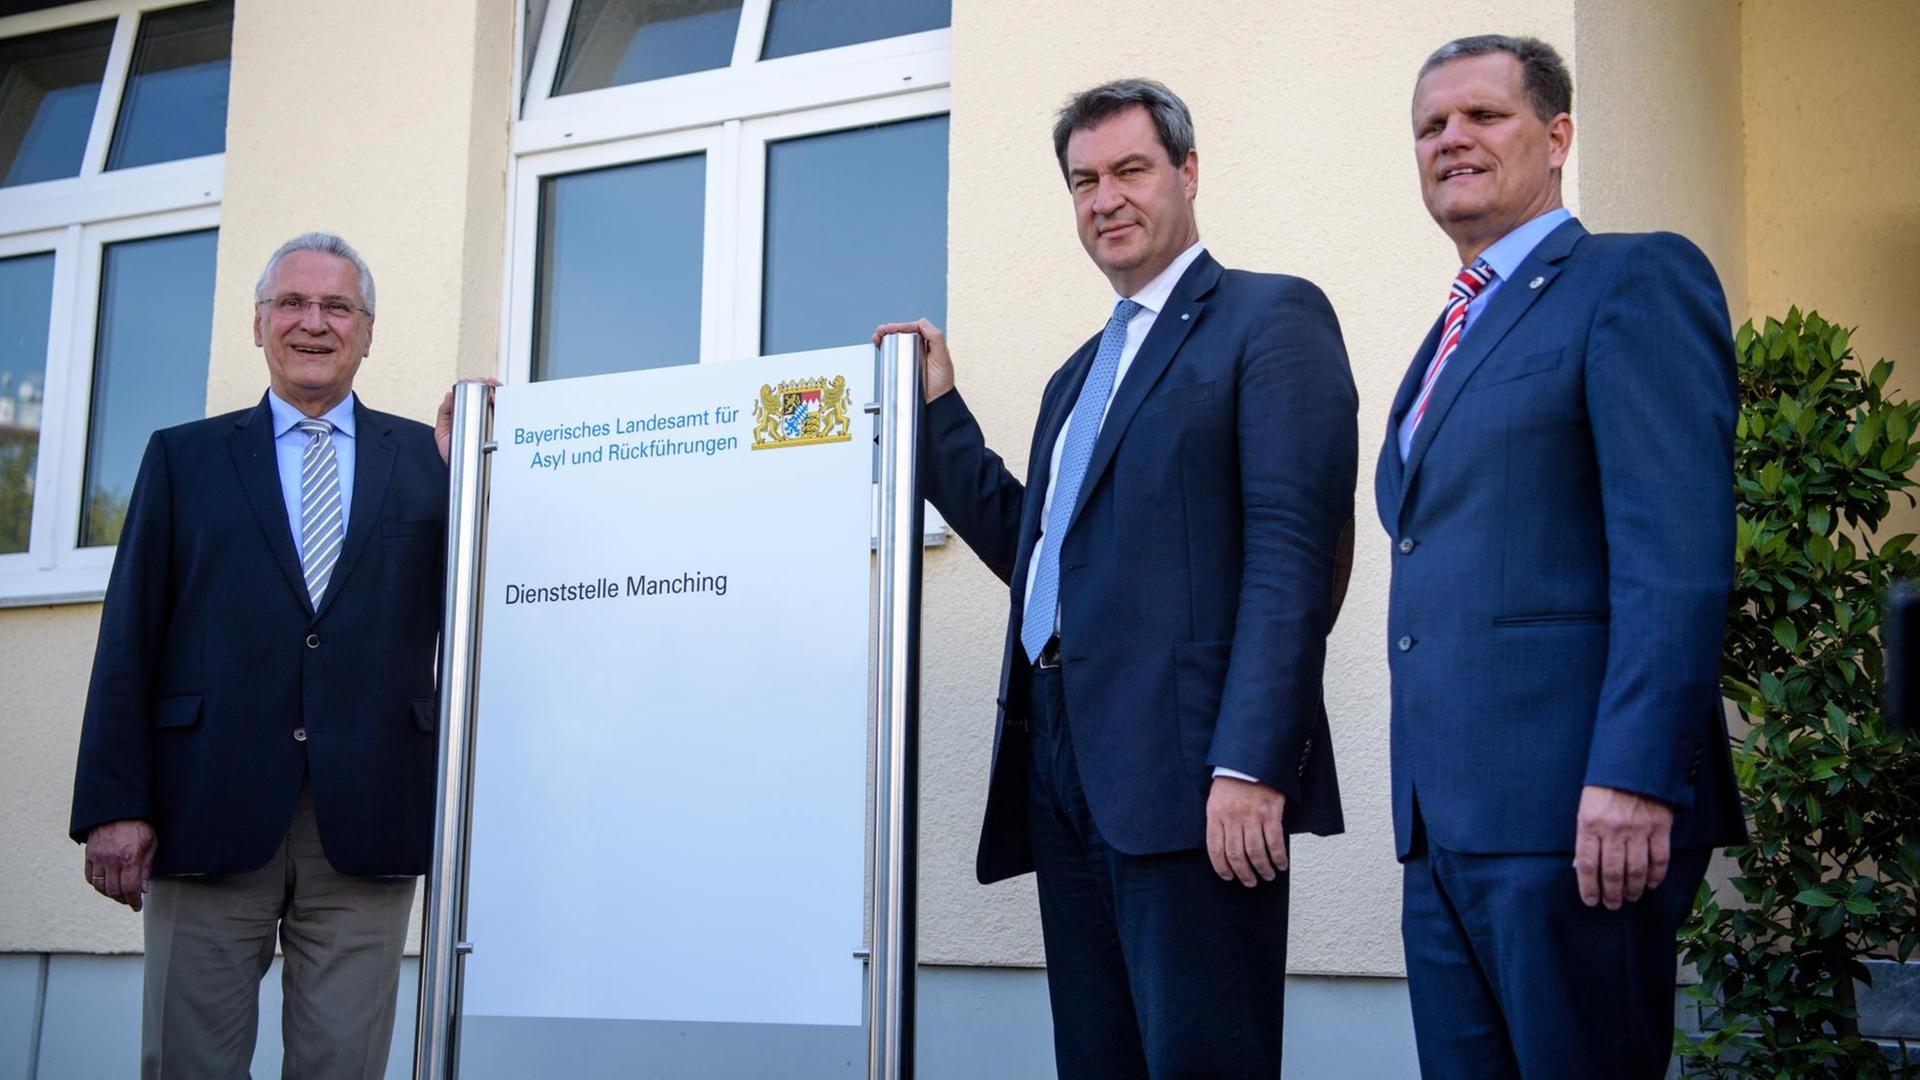 Das Foto zeigt von links nach rechts Bayerns Innenminister Joachim Herrmann (CSU, l-r), Ministerpräsident Markus Söder (CSU), und Thomas Hampel, den Präsident des Landesamtes für Asyl und Rückführungen.